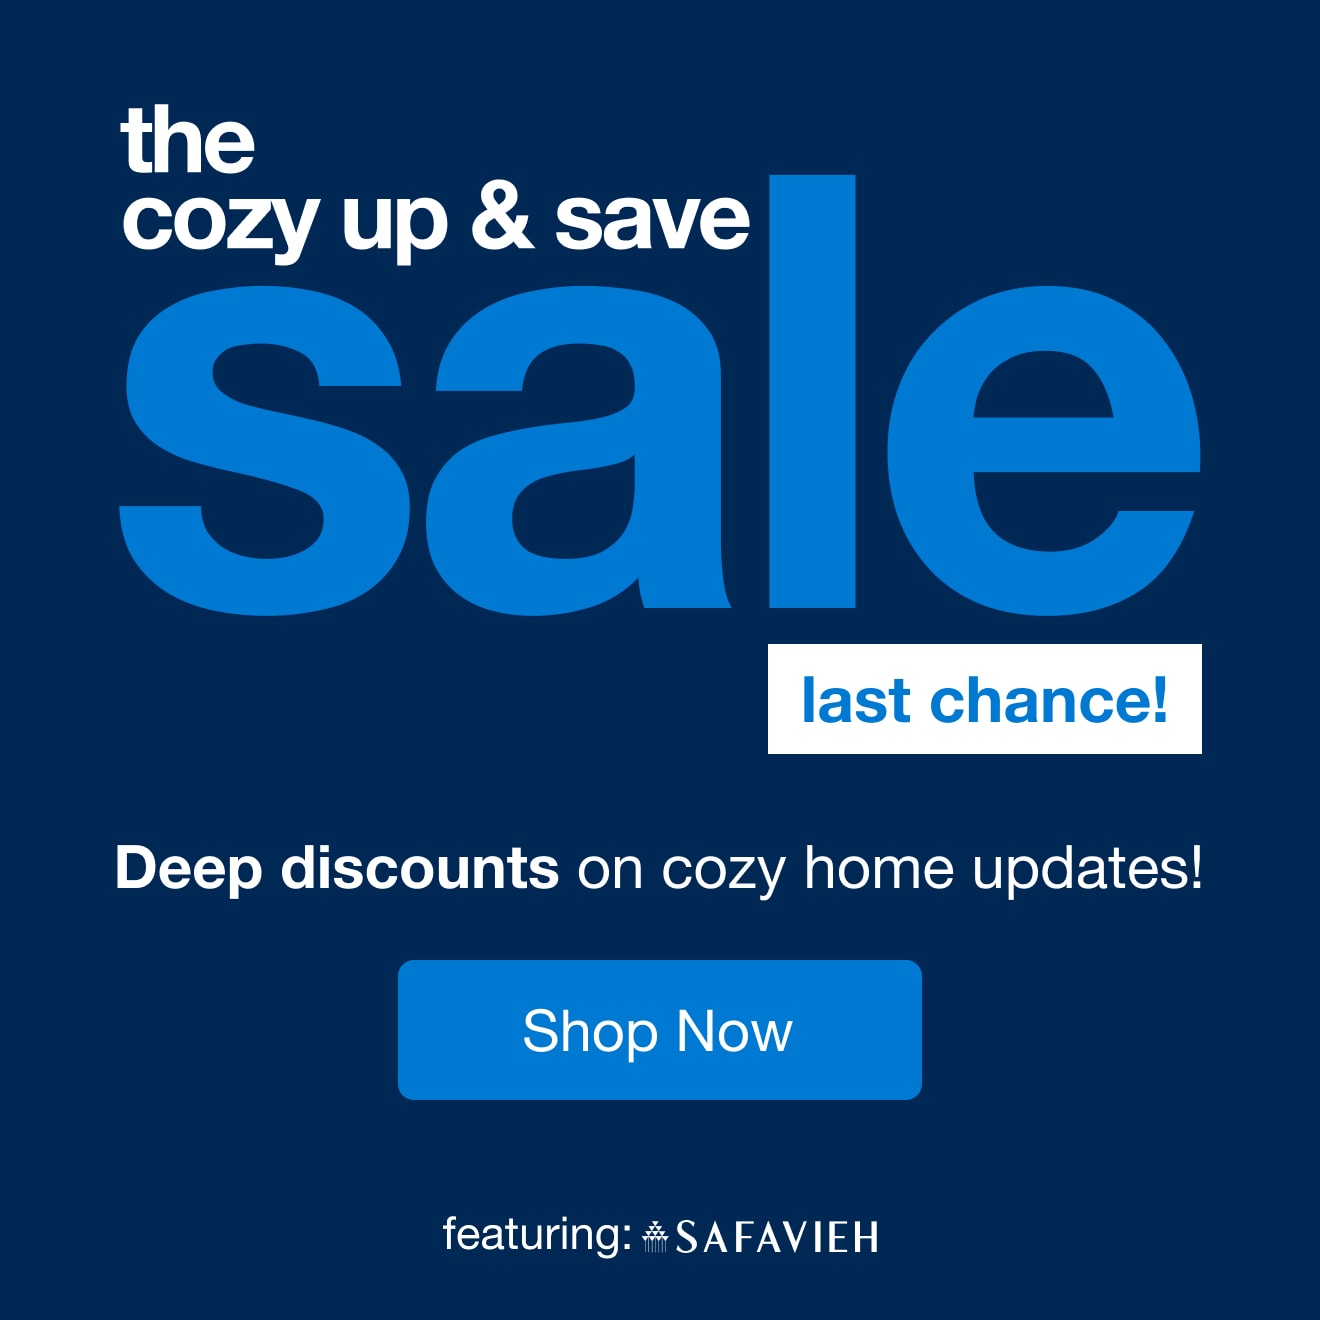 cozy up & save sale - last chance